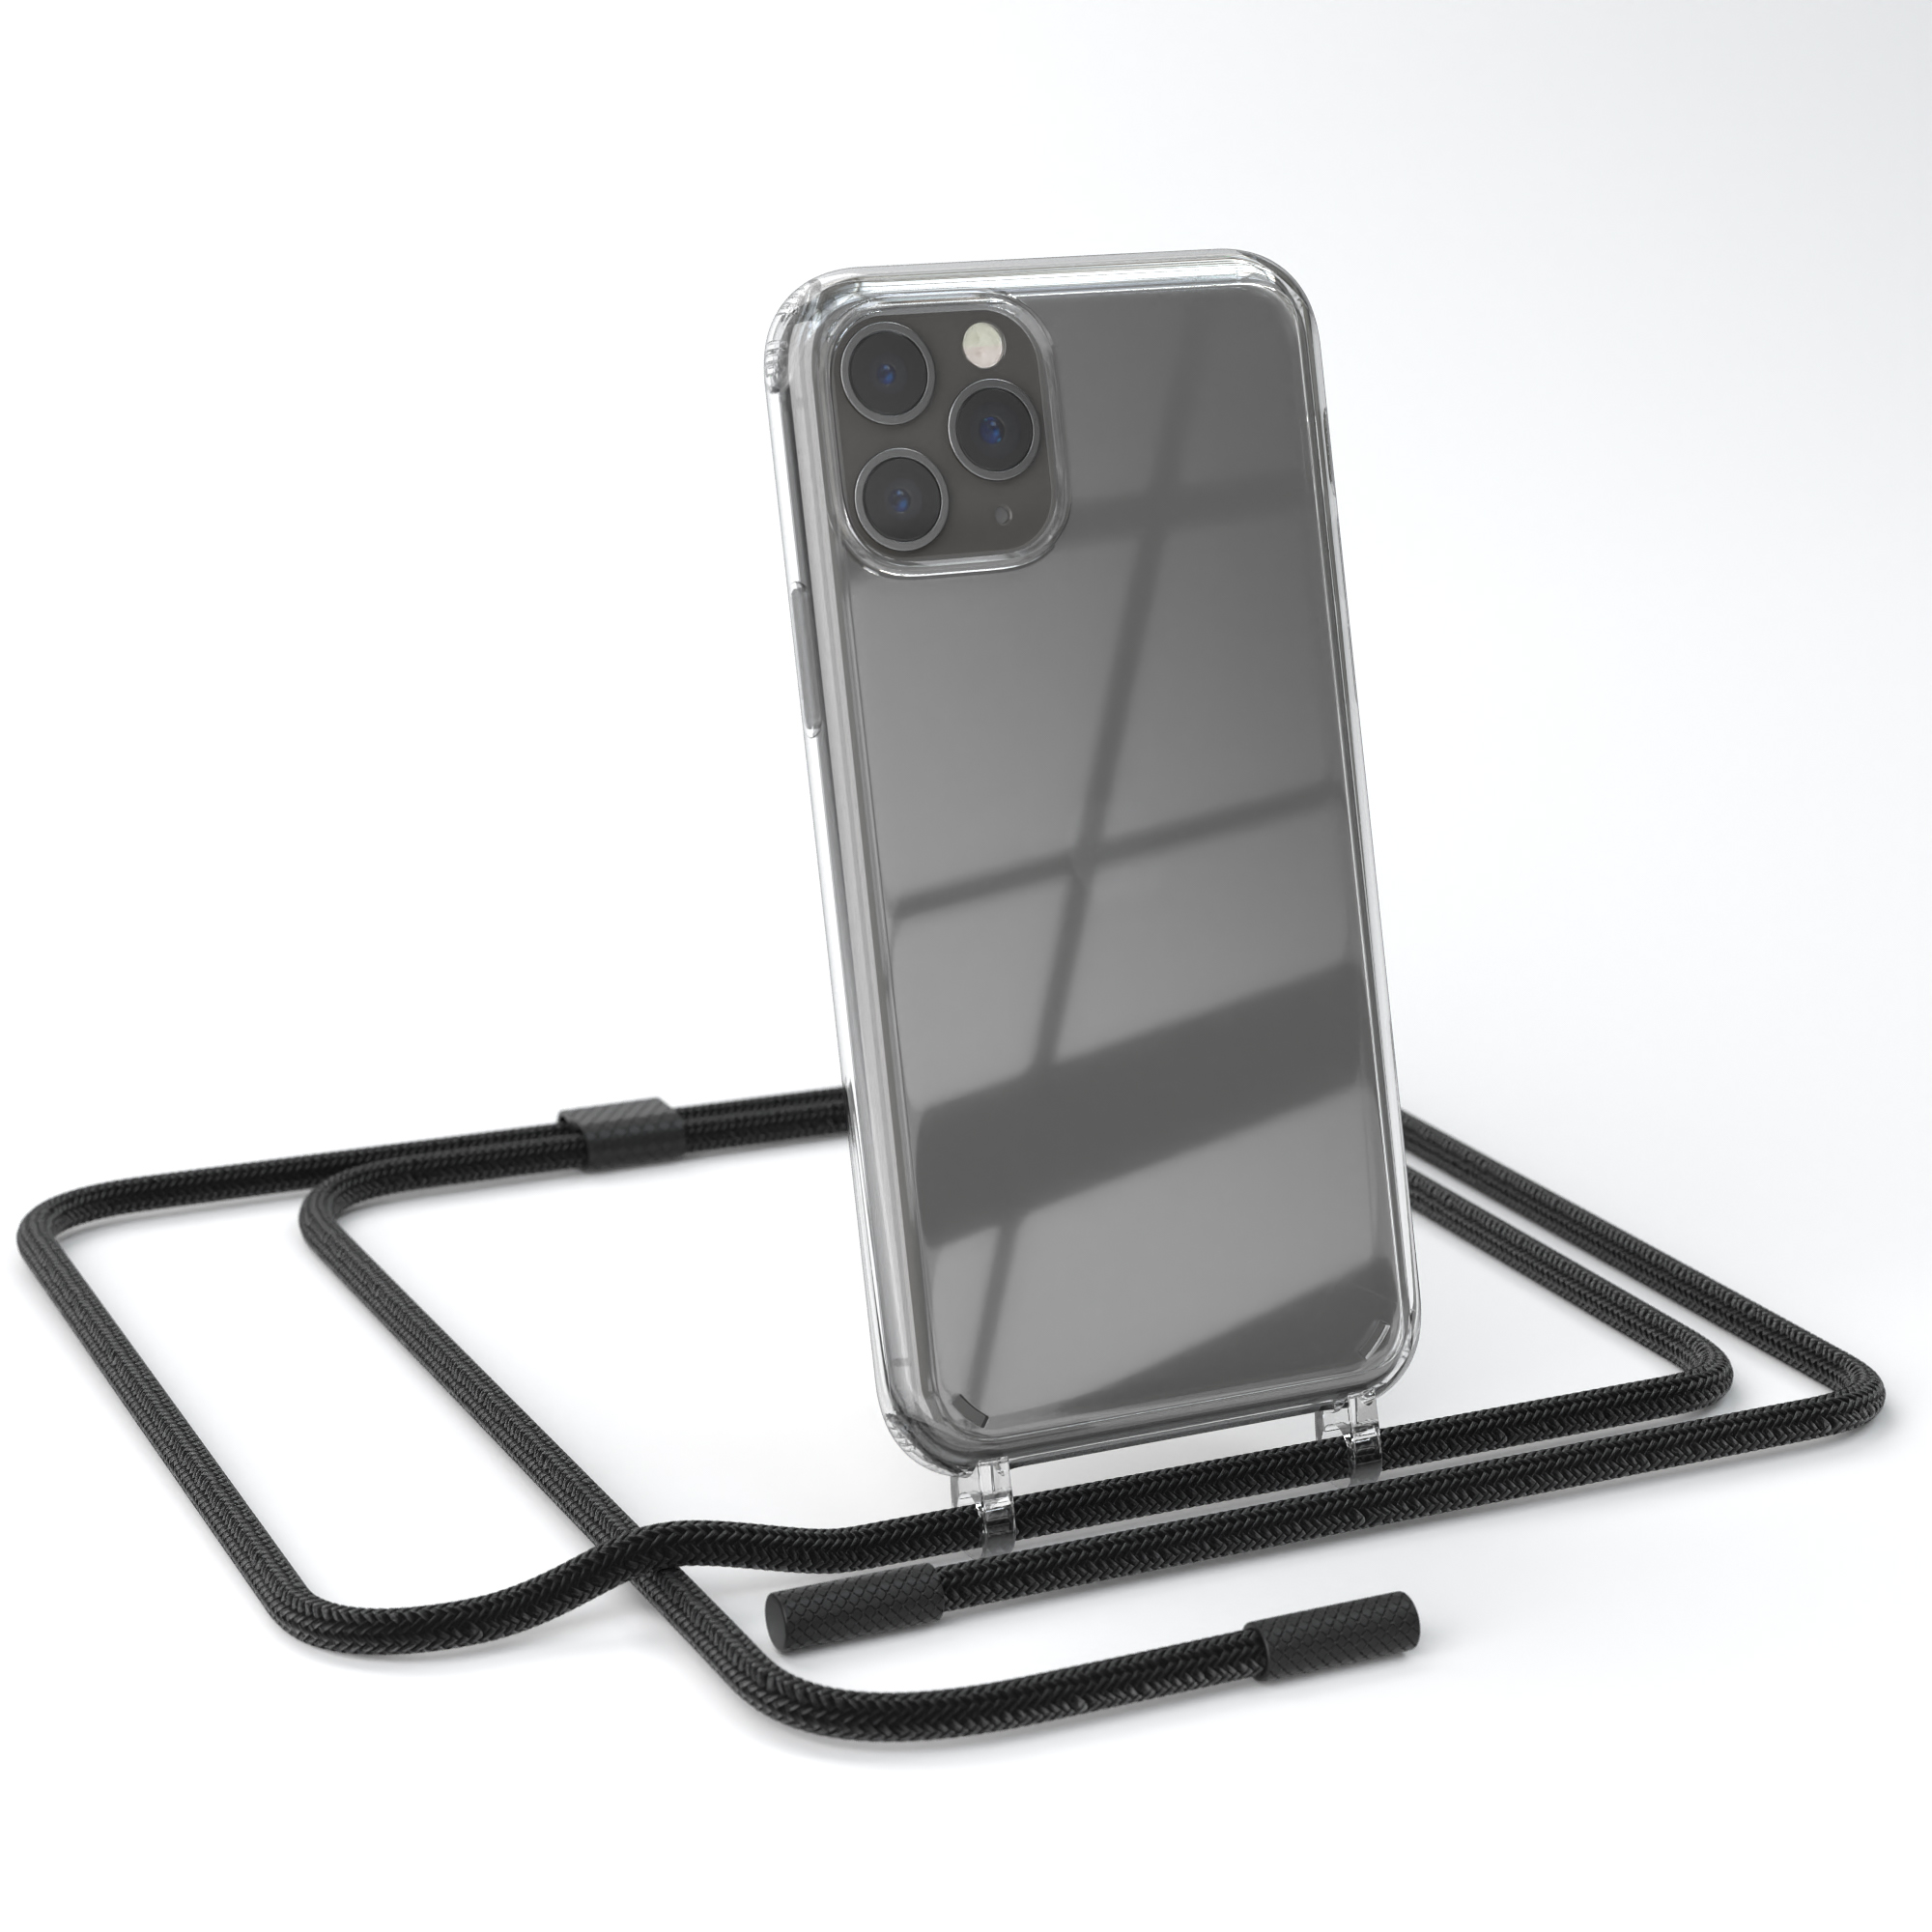 Schwarz Transparente mit iPhone 11 Kette Apple, Pro, EAZY unifarbend, CASE runder Umhängetasche, Handyhülle